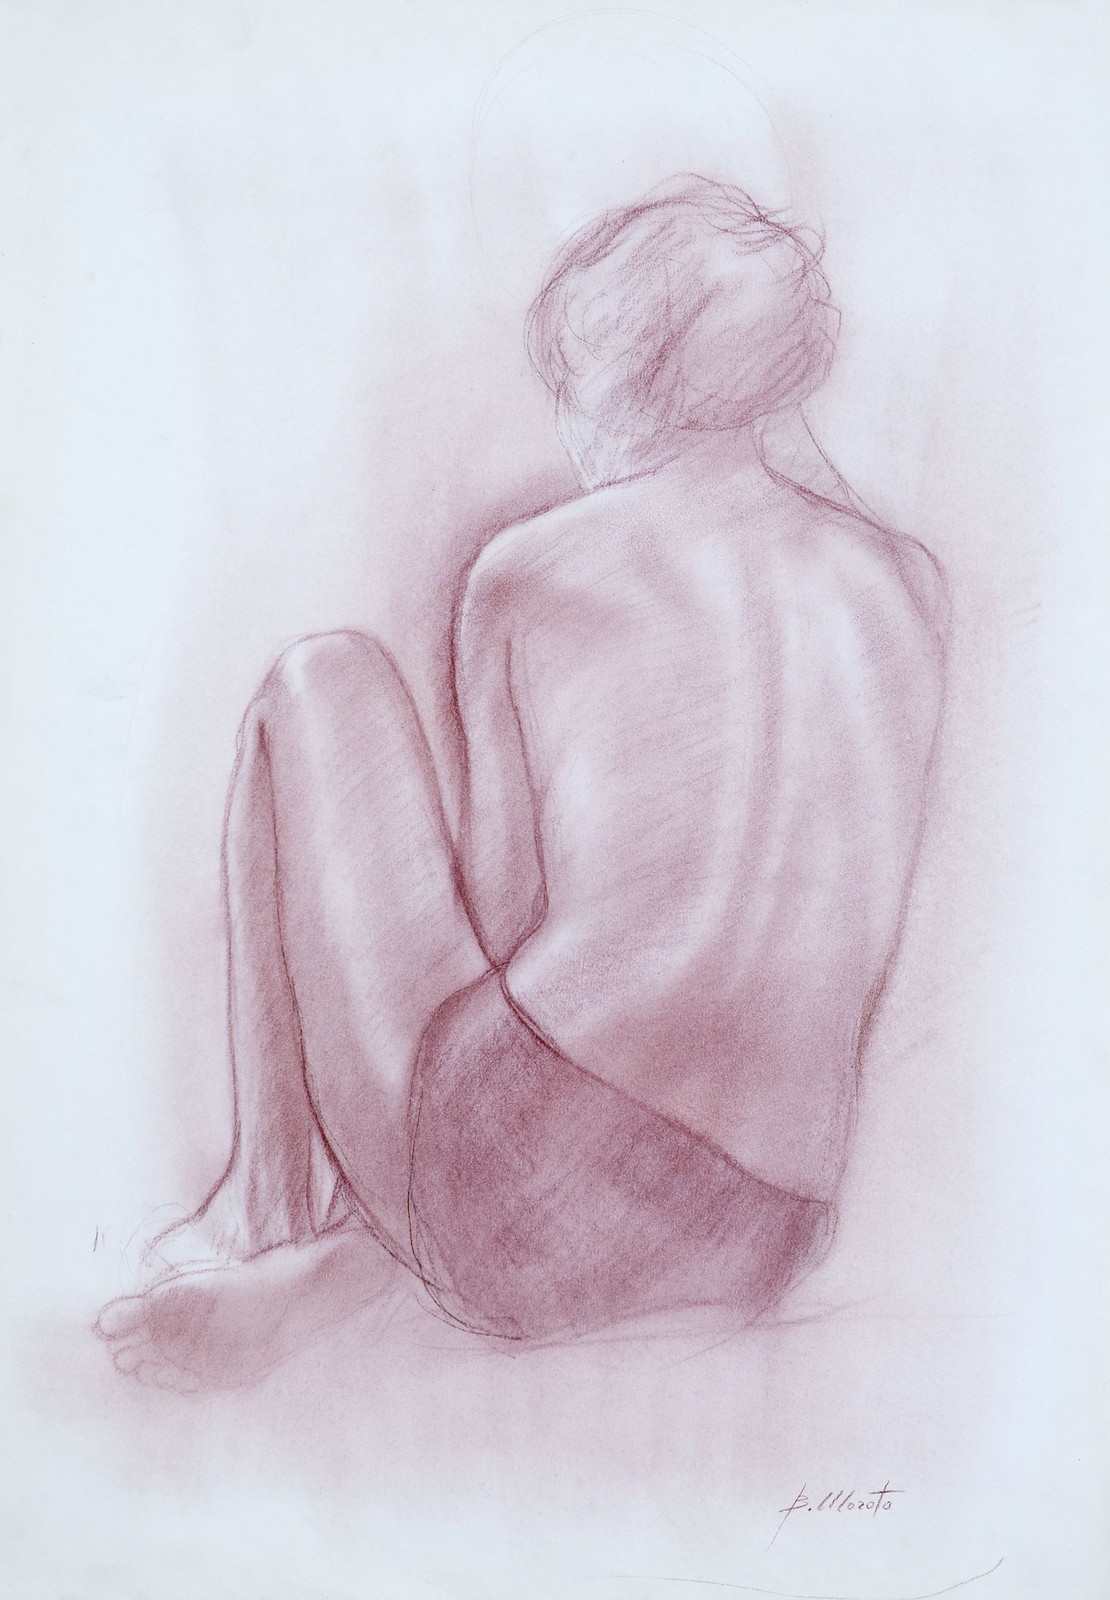 Bruno-Morato-Art- Lorella di schiena, pastello, 70x50 cm